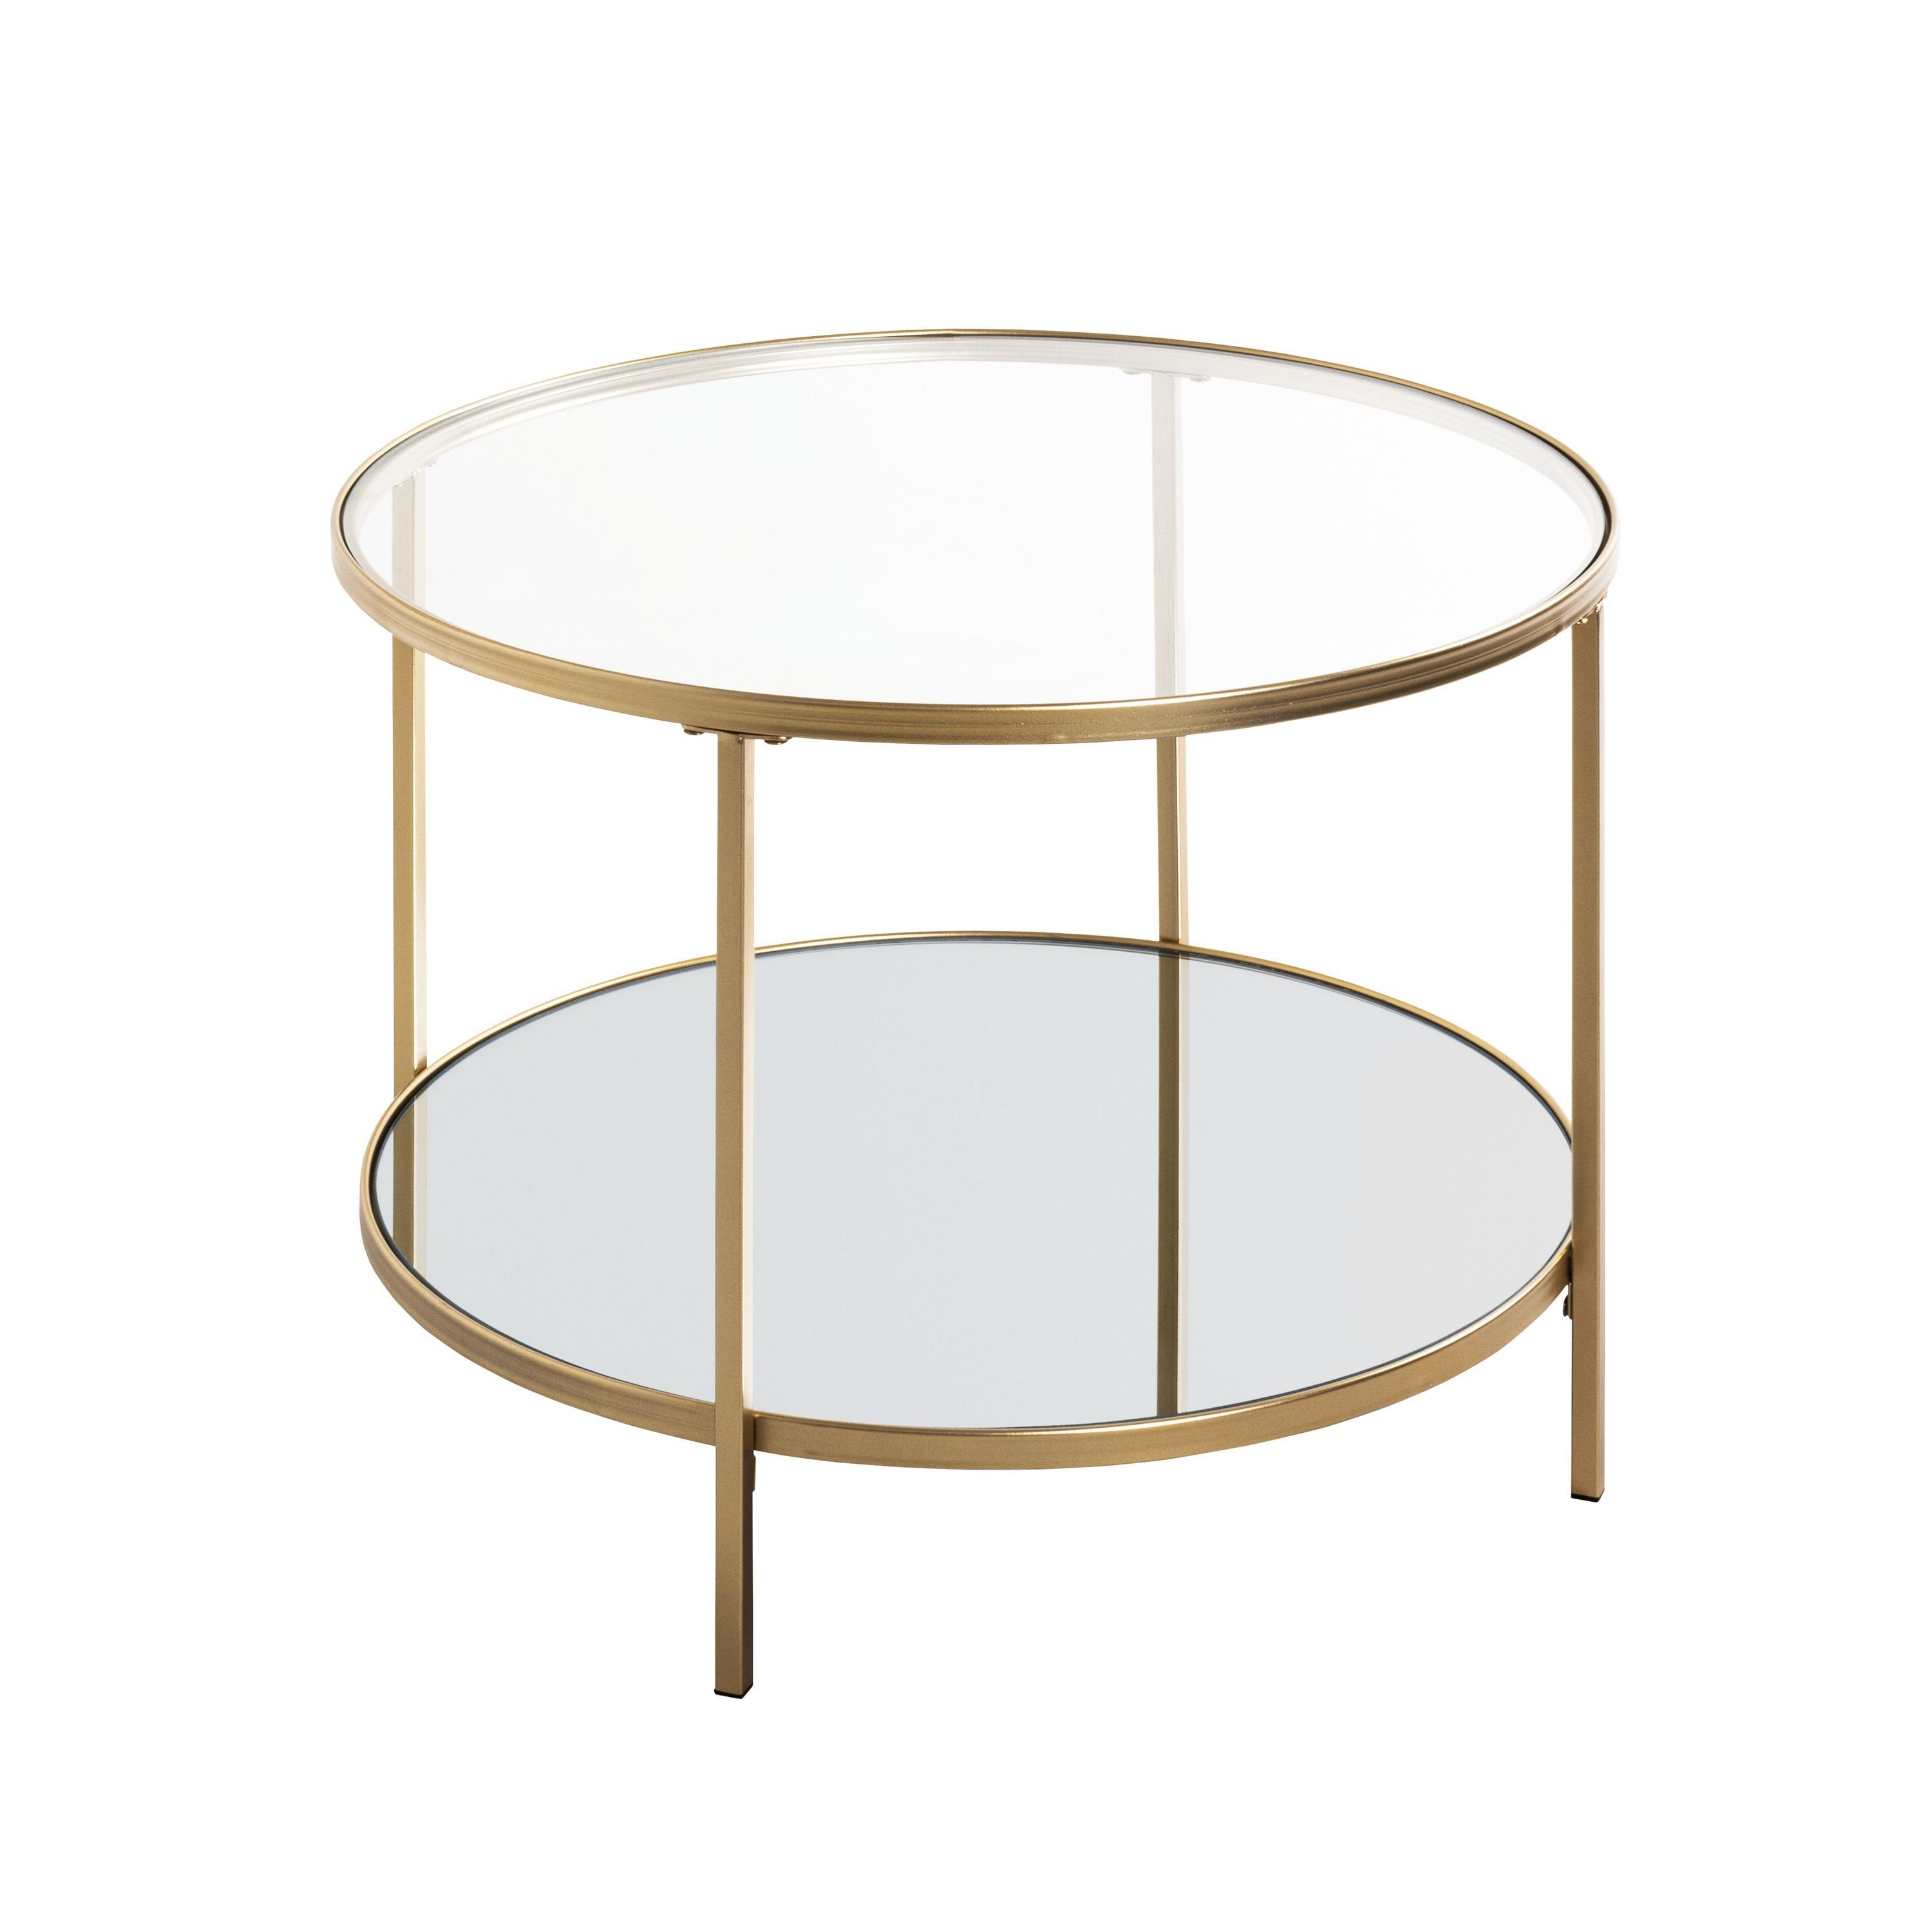 HAKU Beistelltisch Beistelltisch, HAKU Möbel Beistelltisch (DH 60x45 cm) DH 60x45 cm gold Kaffeetisch